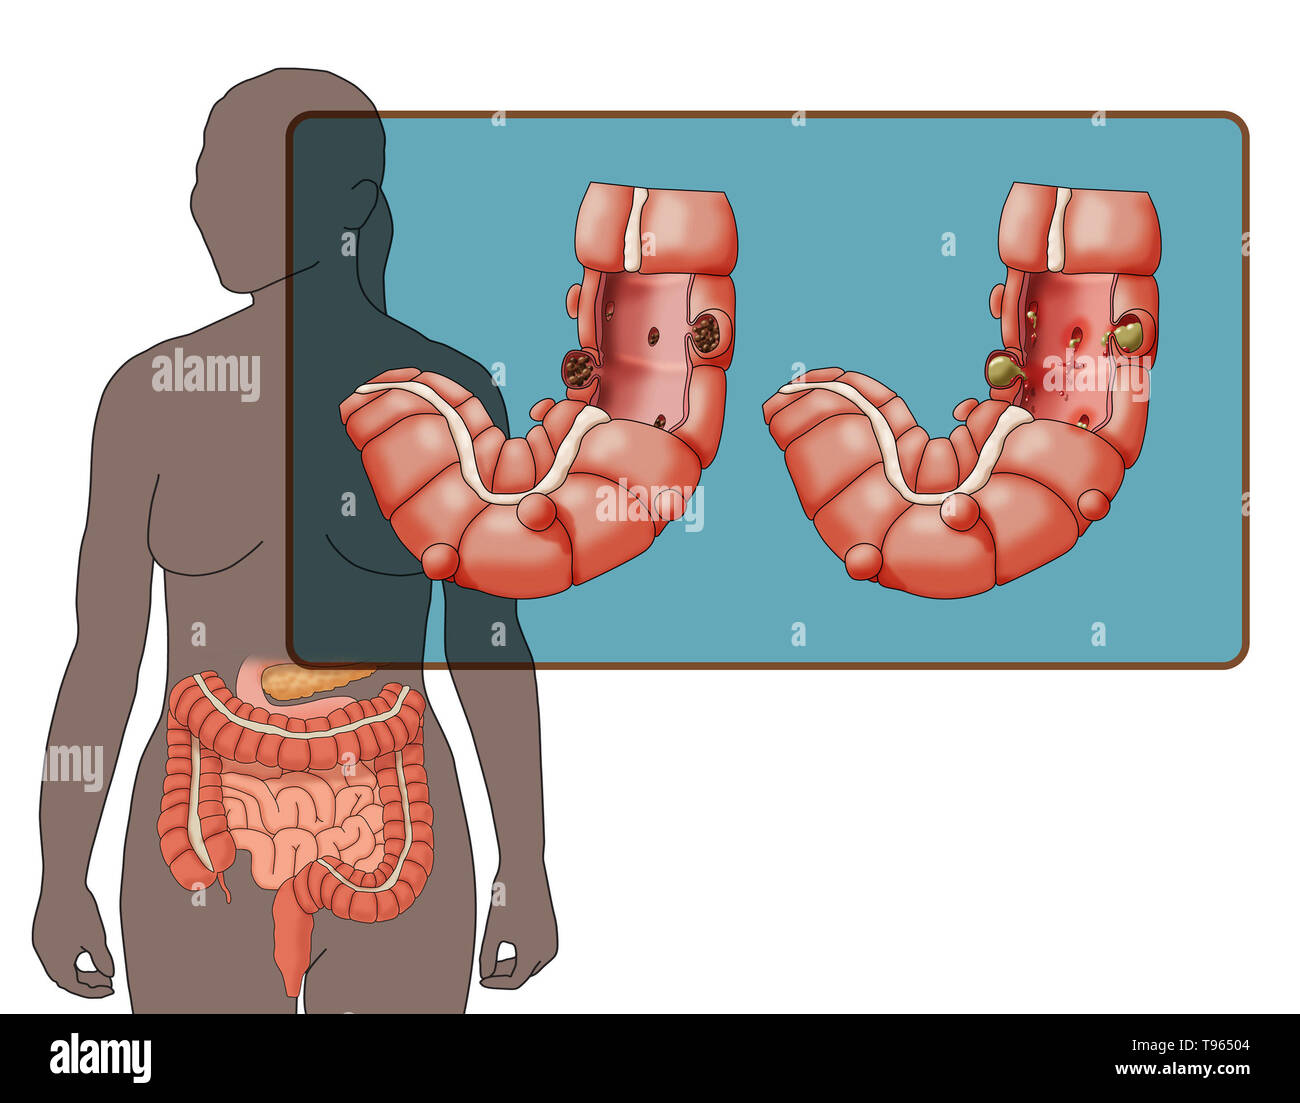 Abbildung: Vergleich der Darstellung von divertikulose und Divertikulitis (links) (rechts); eine weibliche Silhouette mit dem Verdauungssystem markiert ist im Hintergrund. Stockfoto